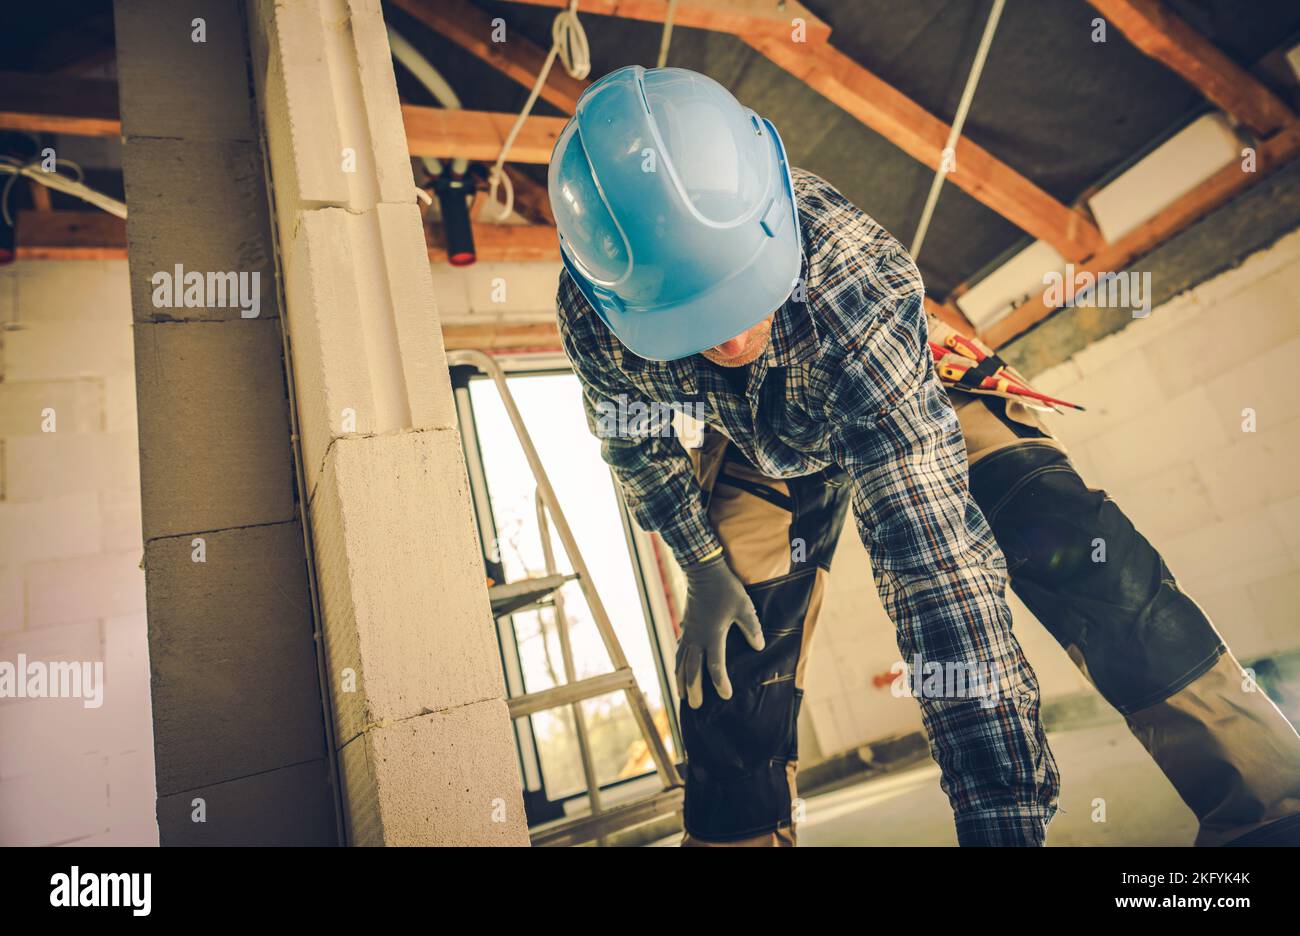 Trabajador de la Construcción Profesional en Blue Hard Hat Bending Down for His Tools. Casa Residencial Sitio de Construcción en el Fondo. Foto de stock